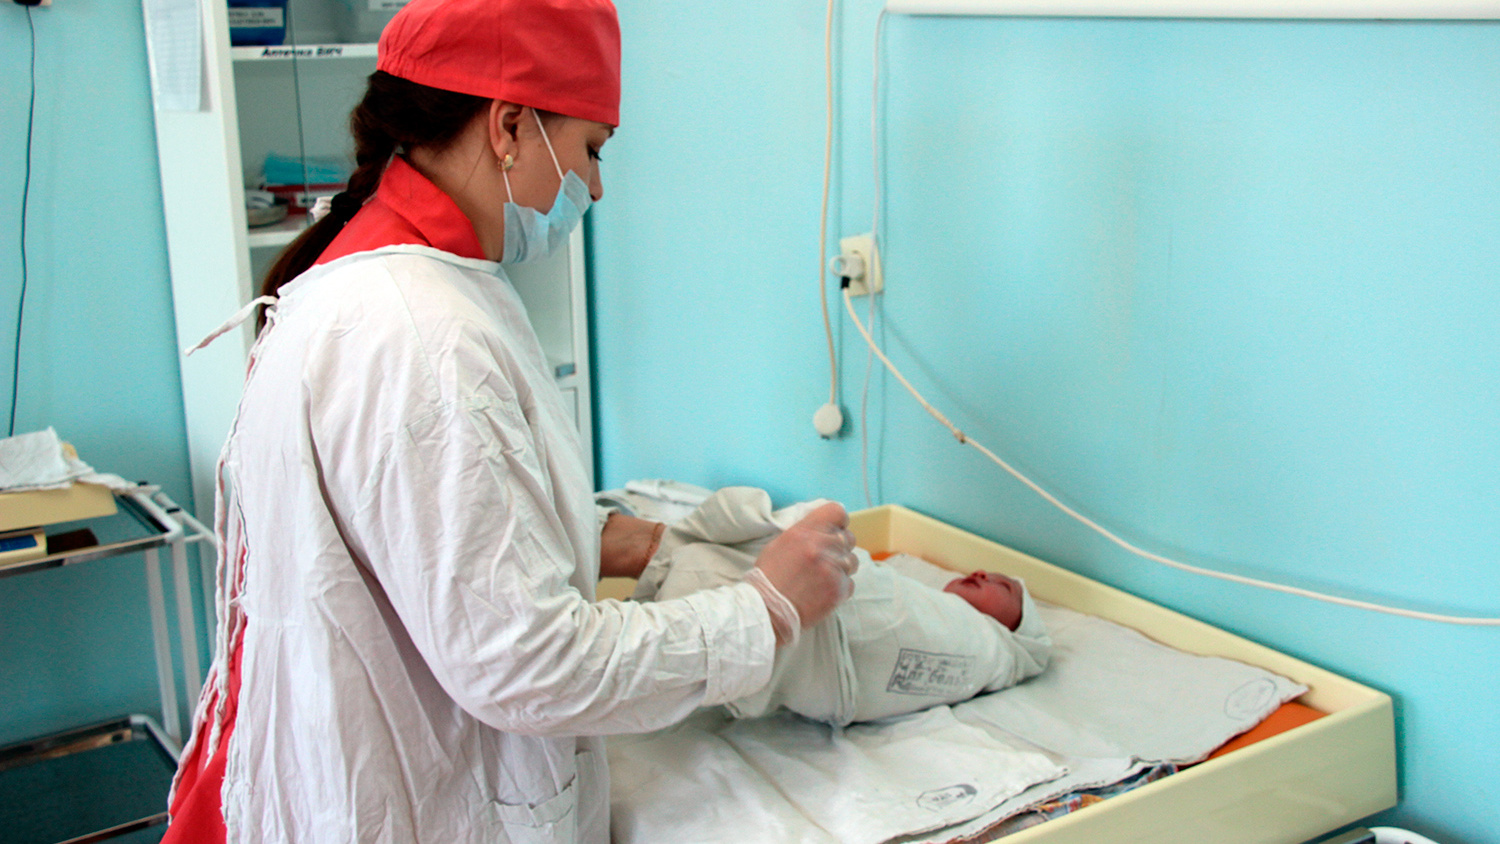 В Кузбассе образовался дефицит участковых медсестер, работающих с педиатрами